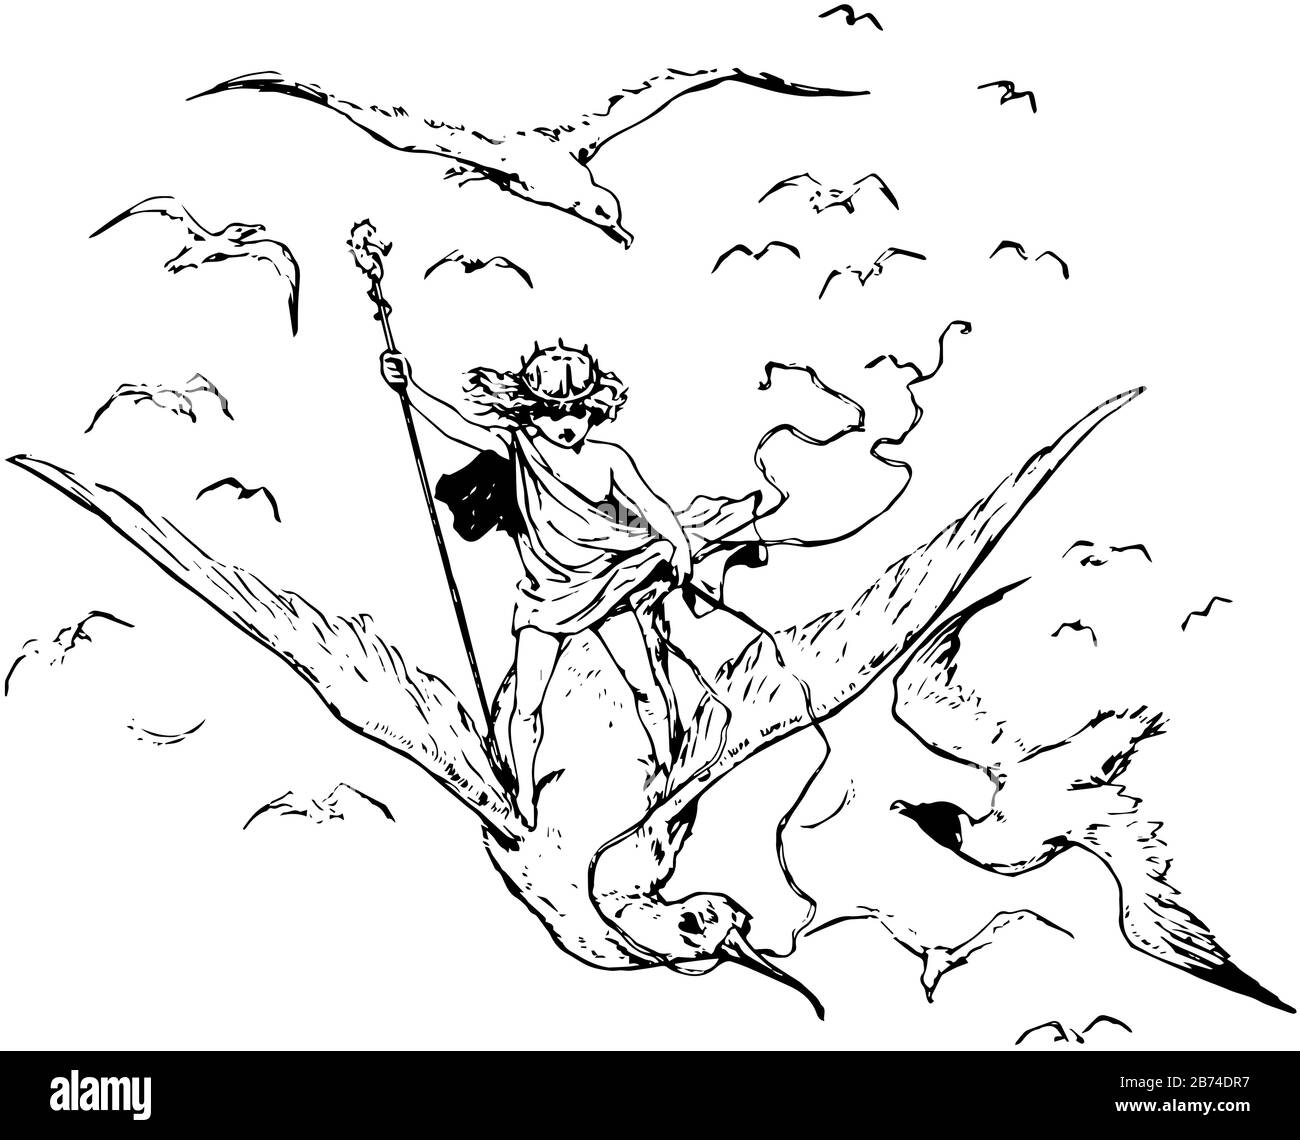 Un ragazzo che cavalca un uccello gabbiano con un bastone in mano e uccelli volanti, disegno linea vintage o illustrazione dell'incisione Illustrazione Vettoriale